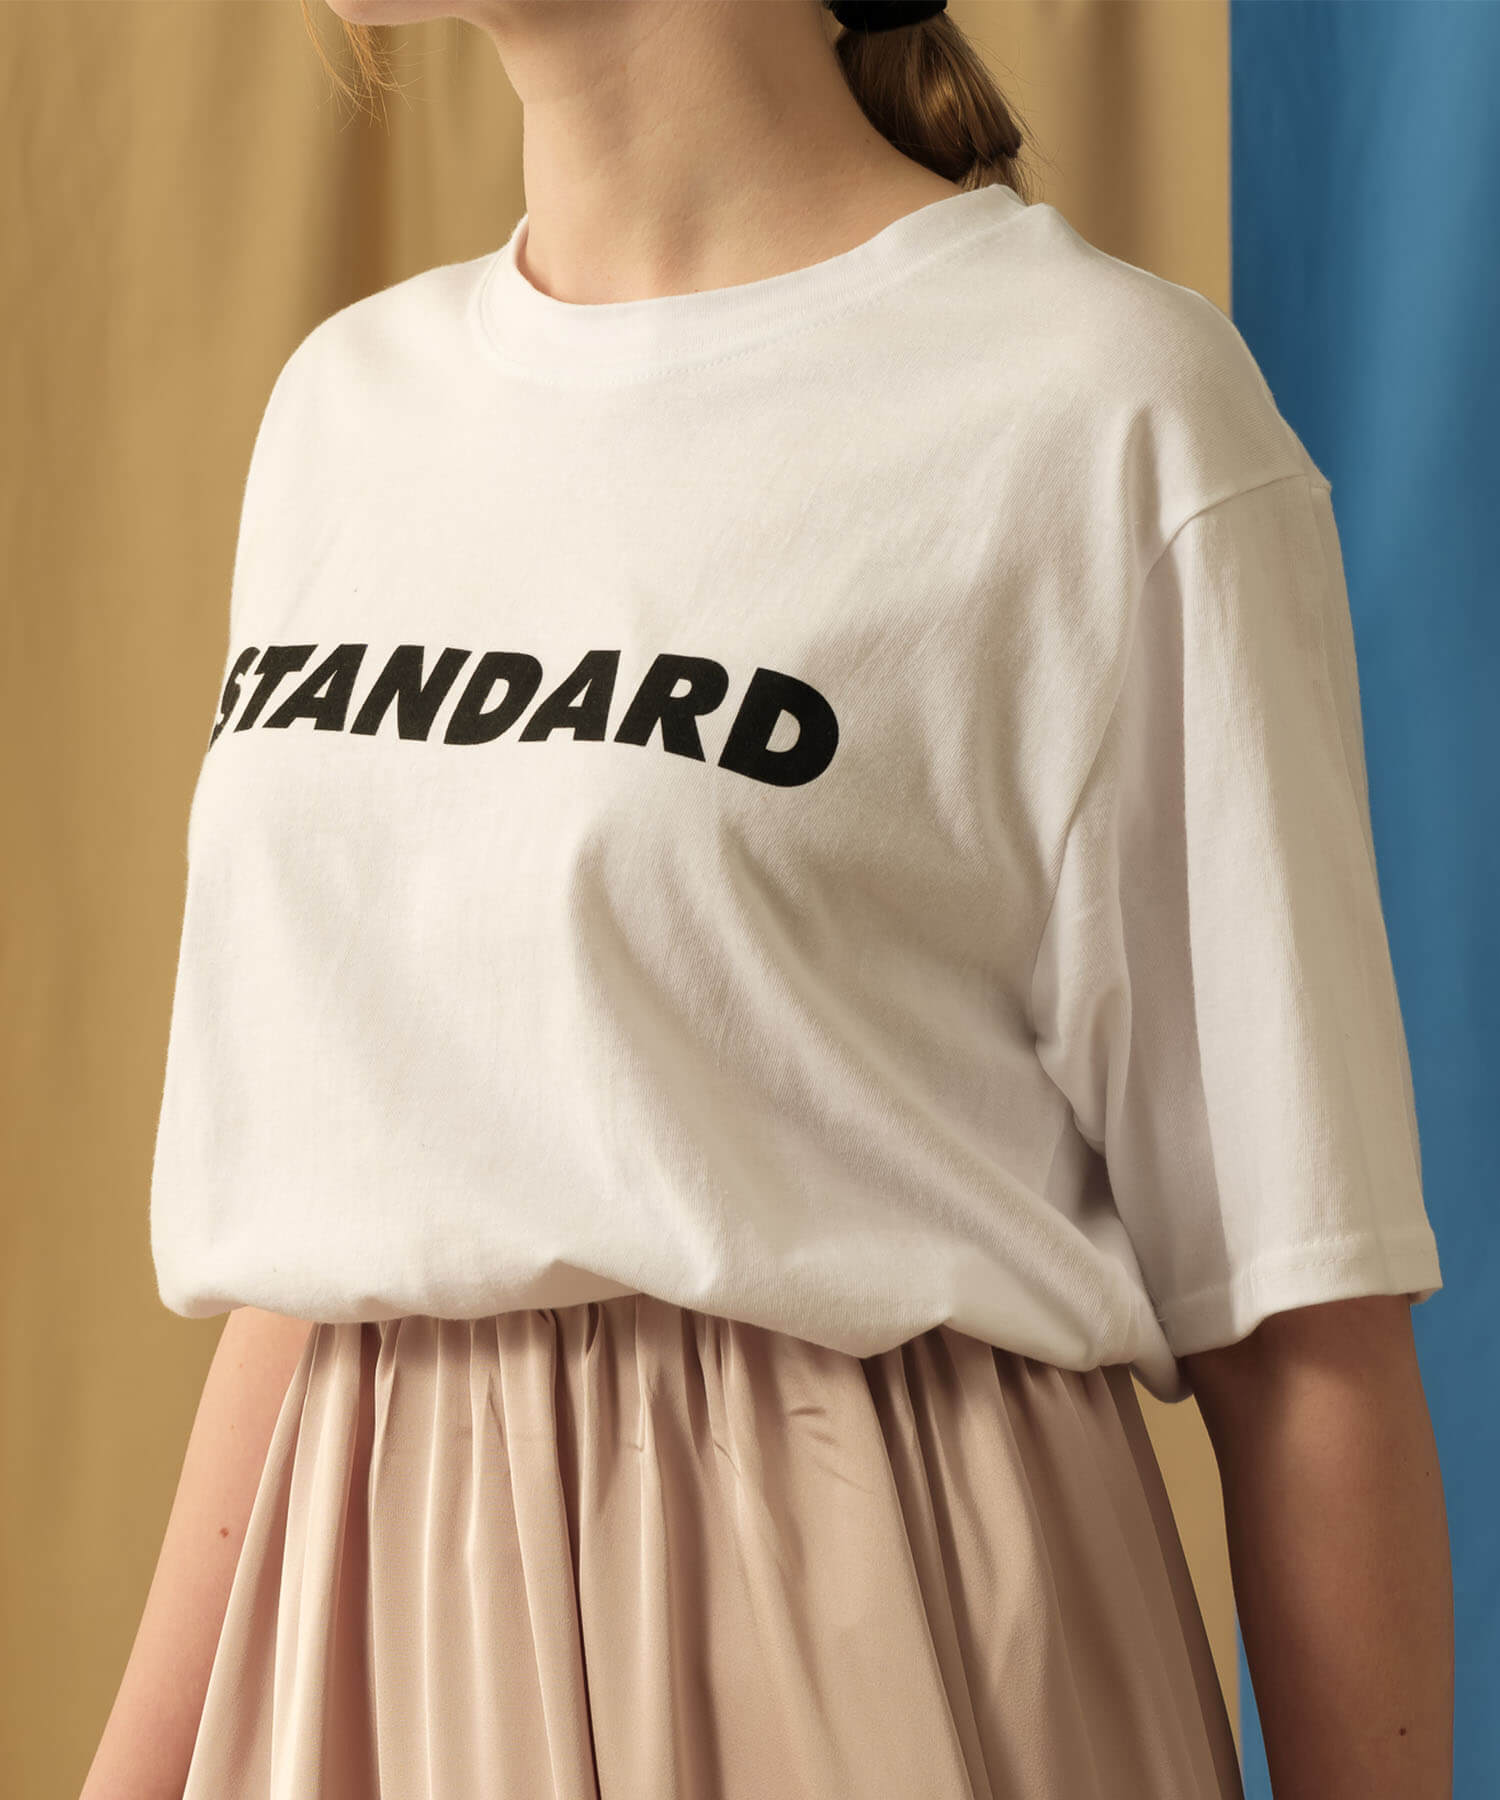 【MIA/ミア】STANDARD-ロゴTシャツ